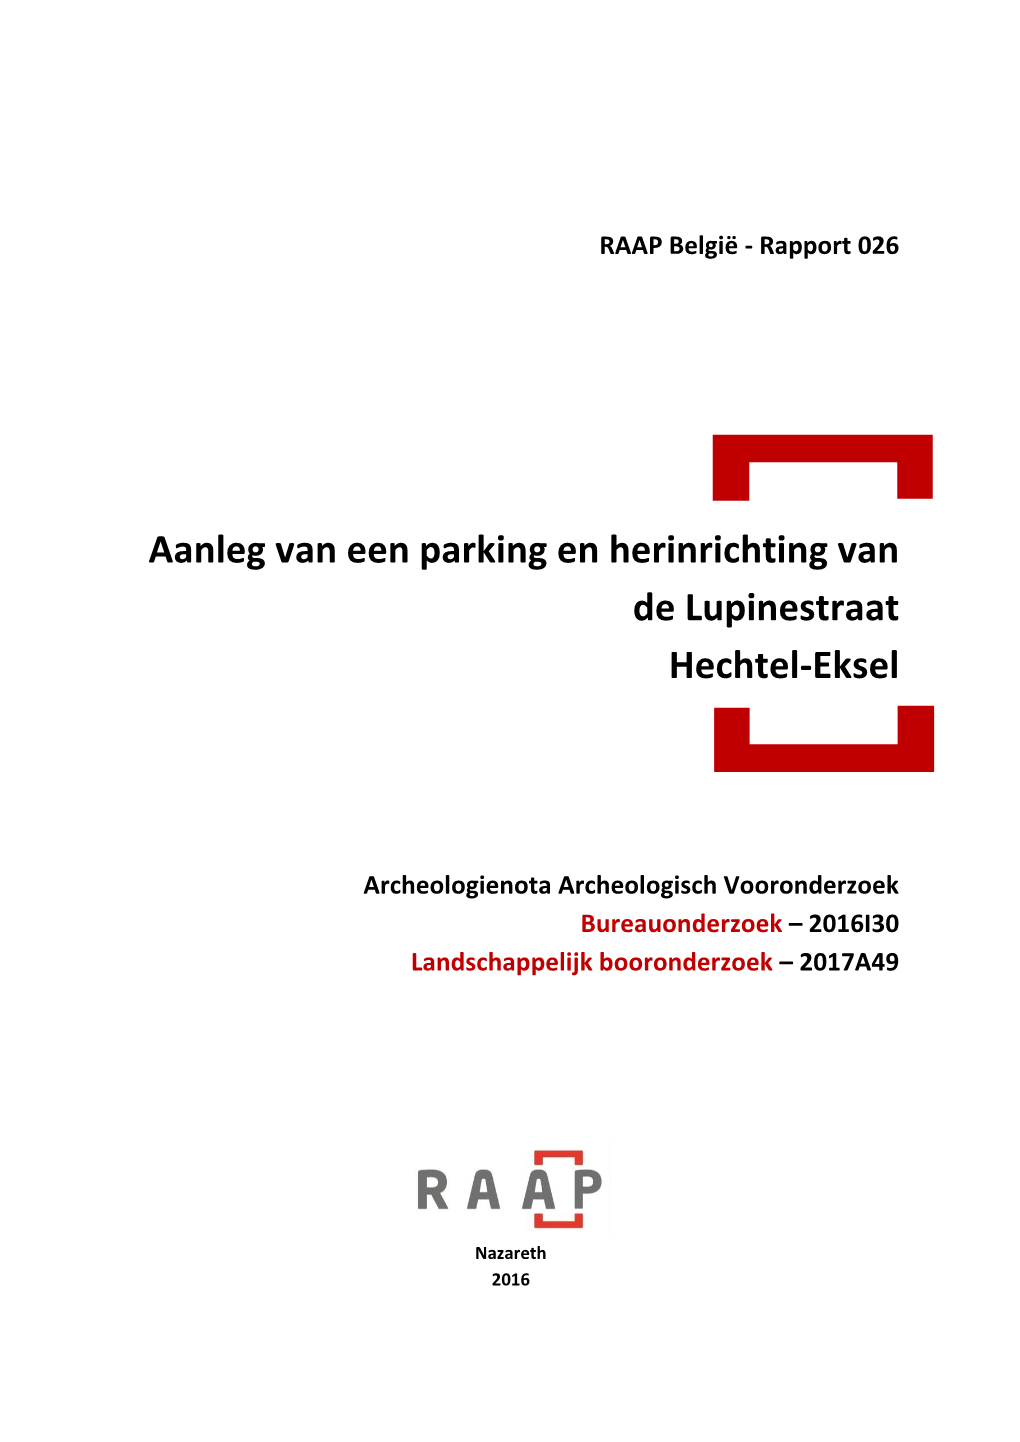 Aanleg Van Een Parking En Herinrichting Van De Lupinestraat Hechtel-Eksel